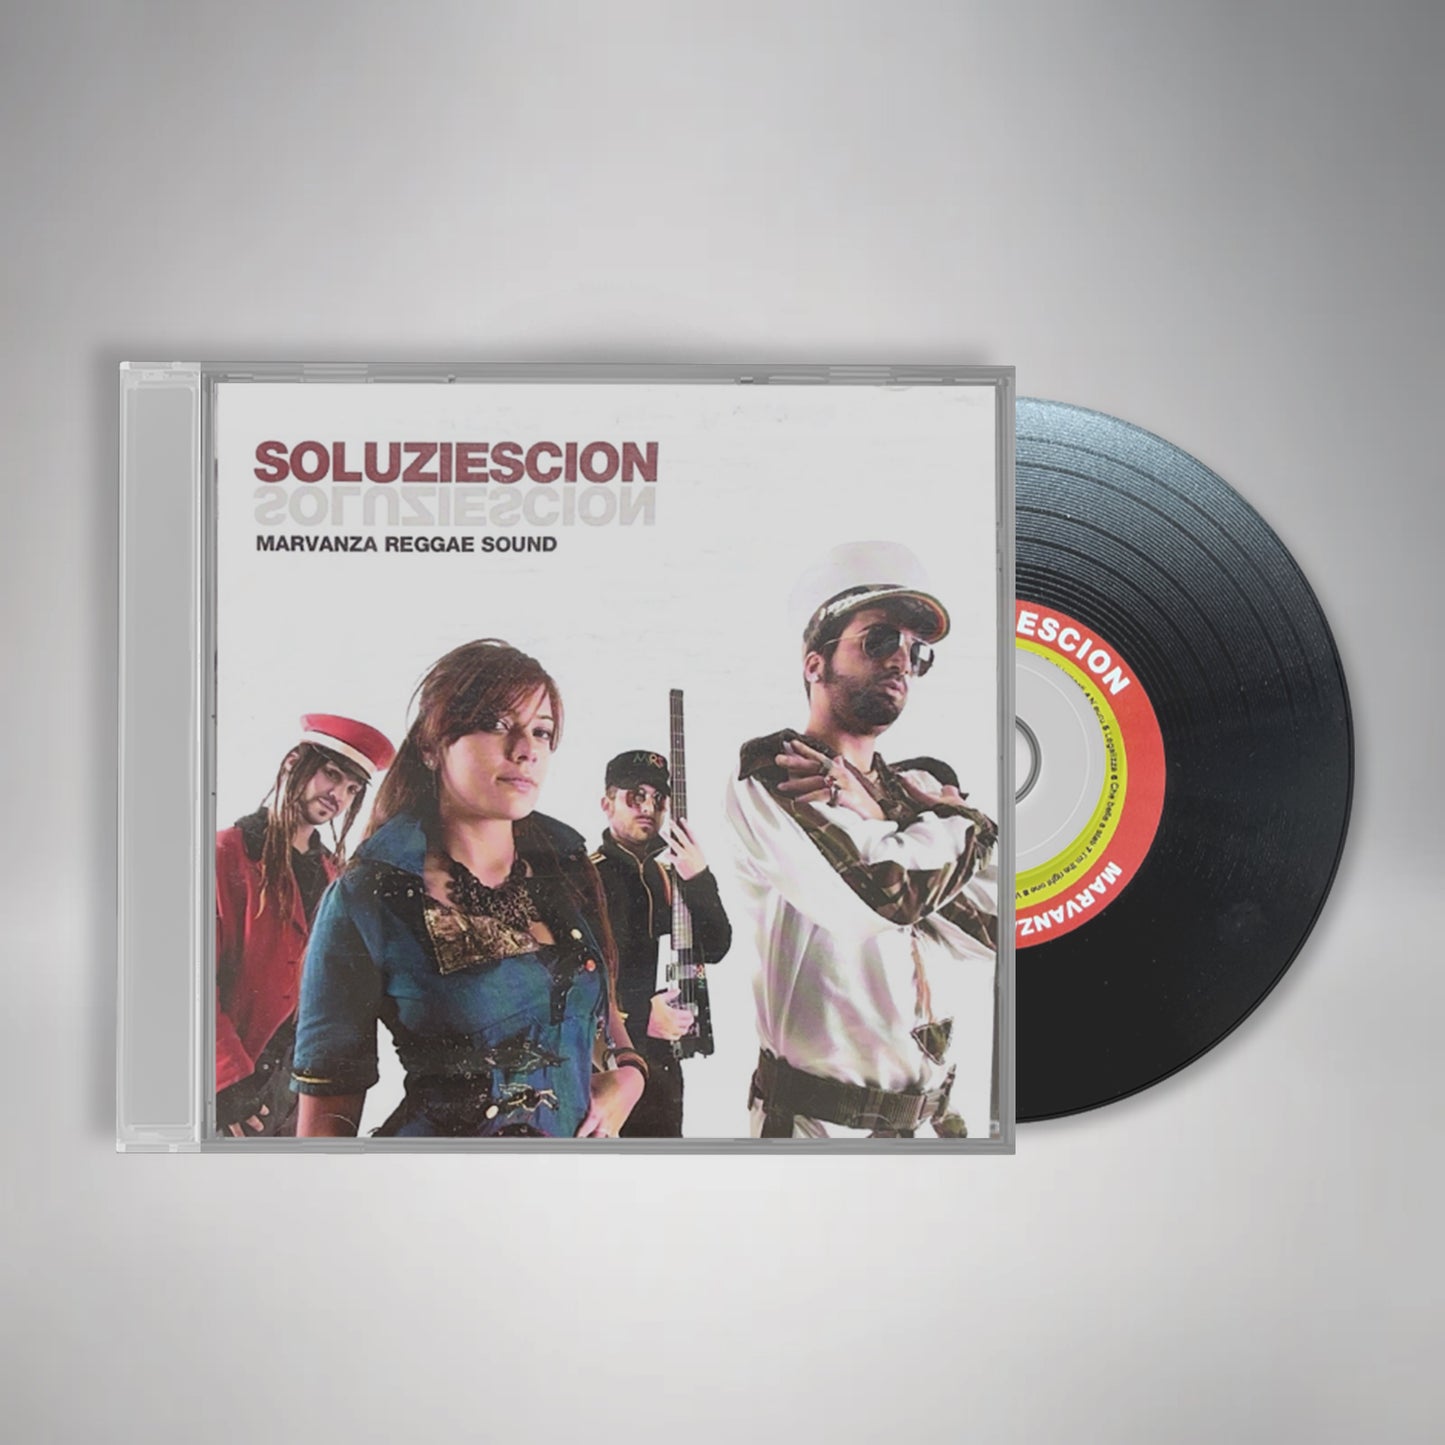 CD "SOLUZIESCION"